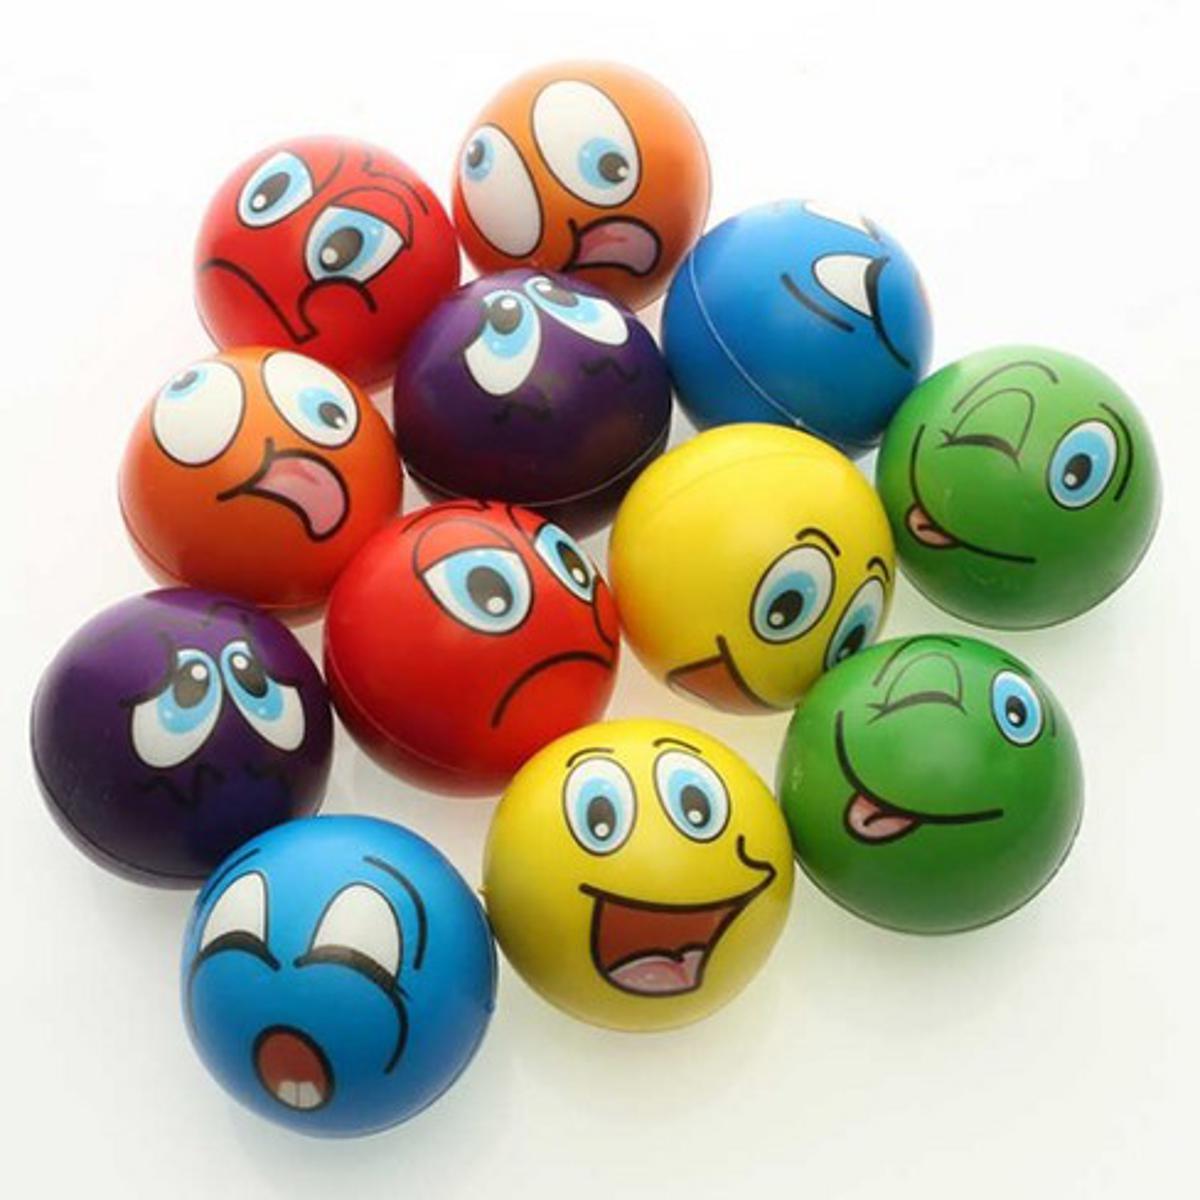 Mini Emoji Soft Foam Stress Reliever Balls, Fidget Toy For Kids & Adults - 1pc